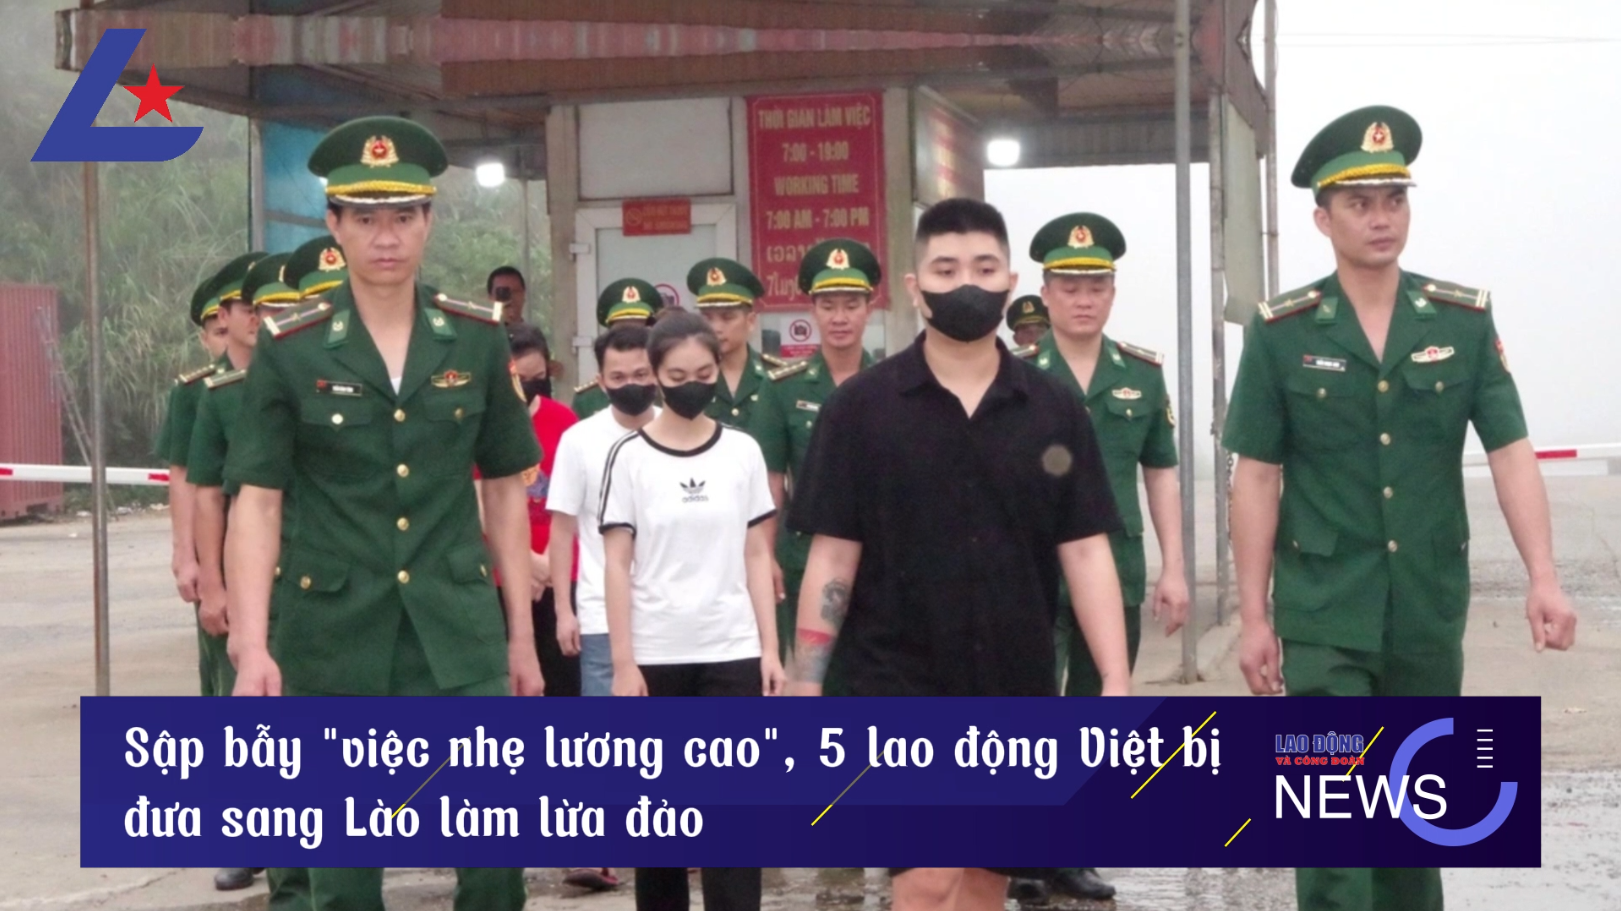 Bản tin công nhân: Sập bẫy "việc nhẹ lương cao", 5 lao động Việt bị đưa sang Lào làm lừa đảo